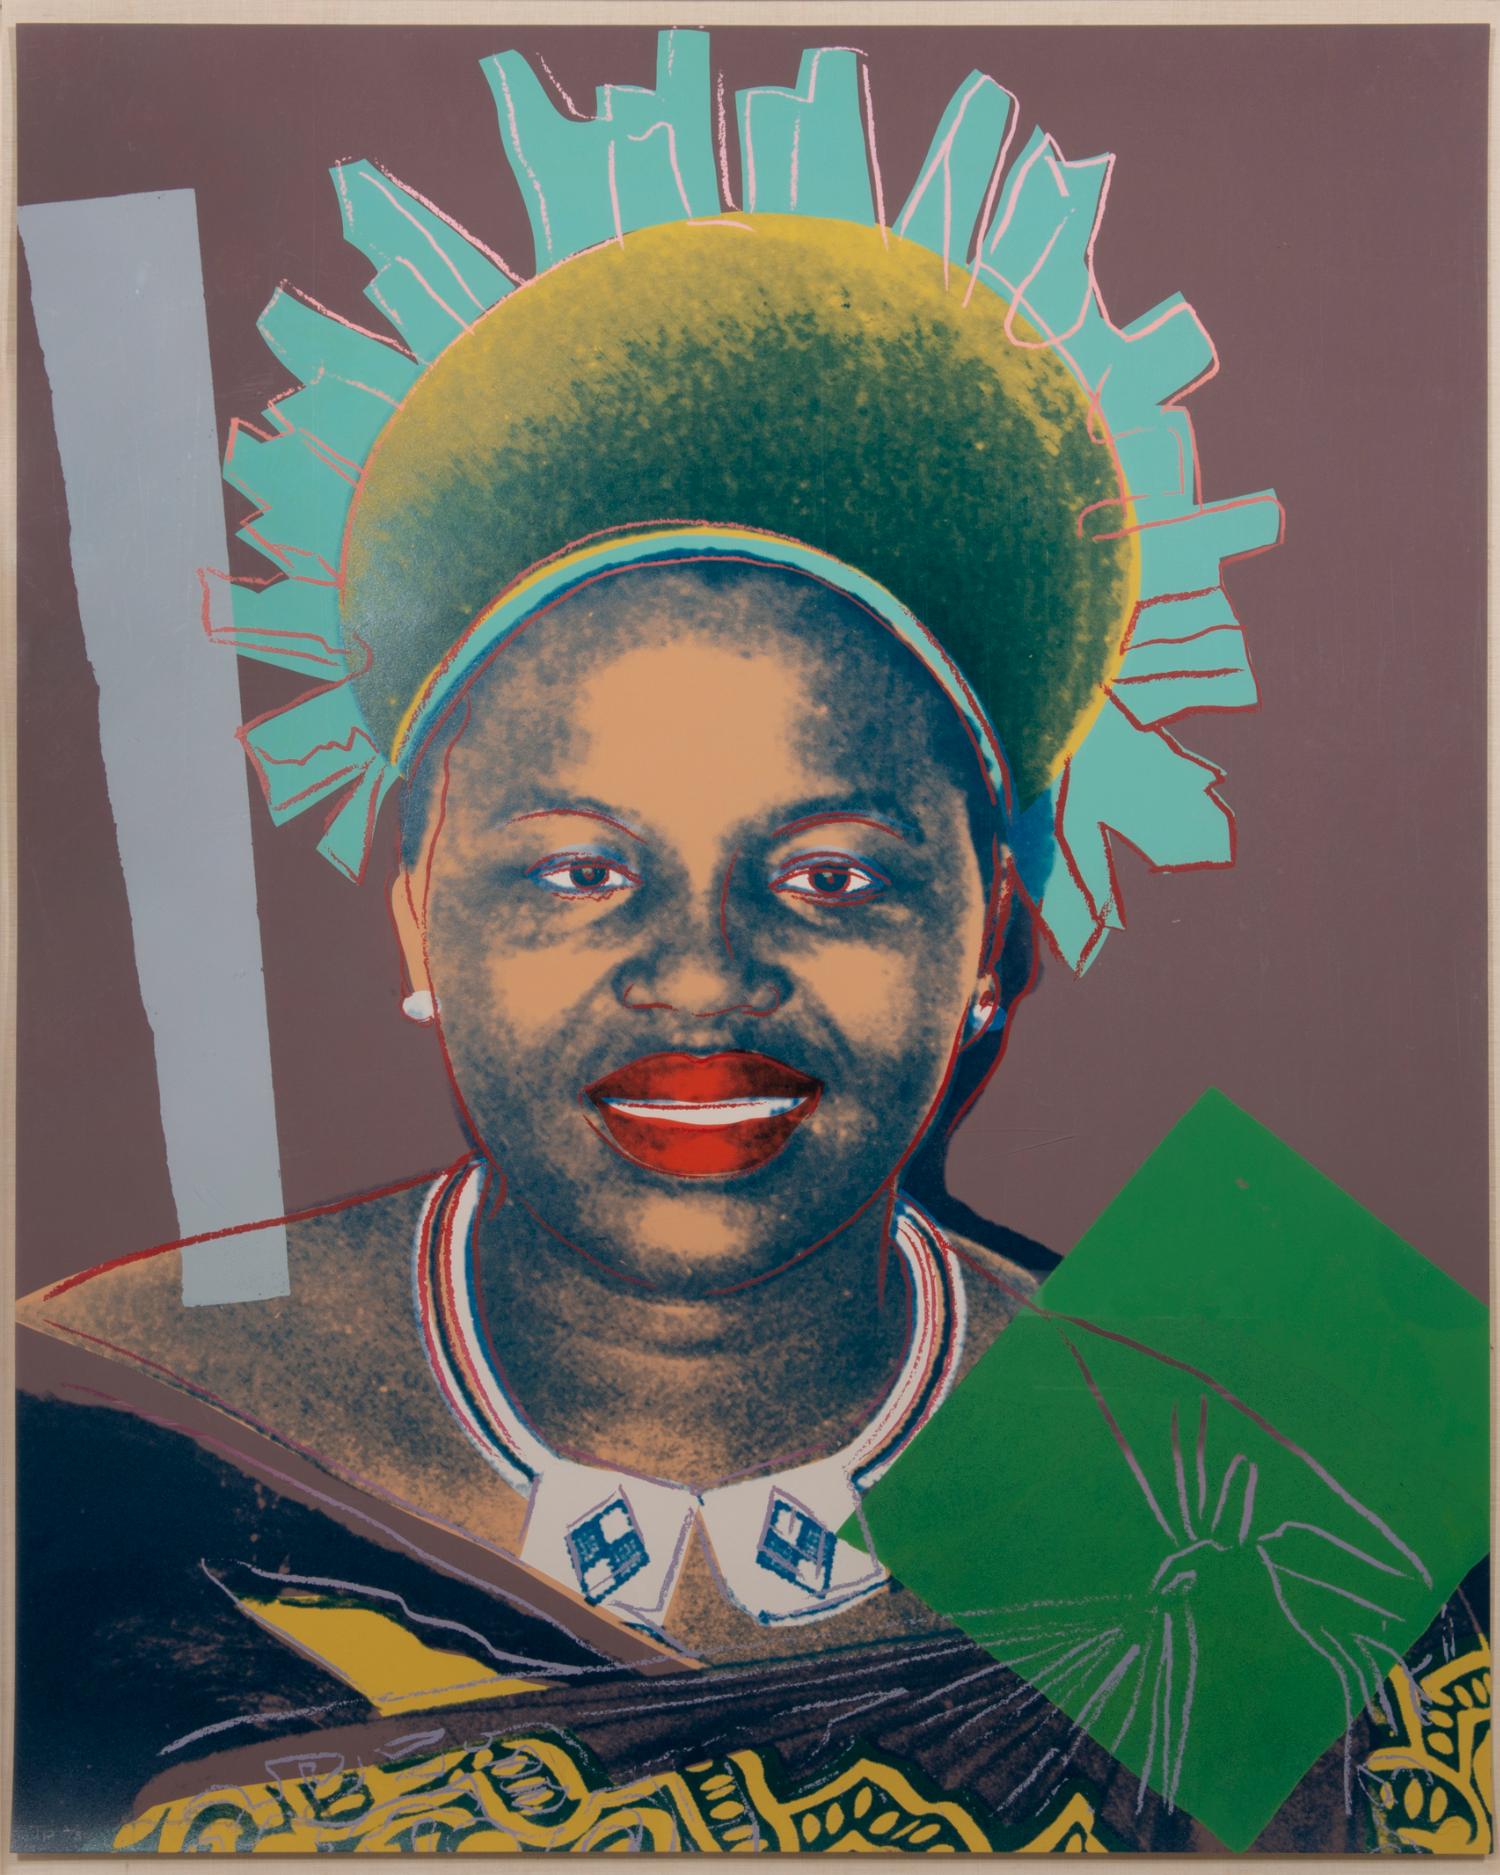 Andy Warhol Portrait Print - Queen Ntombi Twala, from Reigning Queens